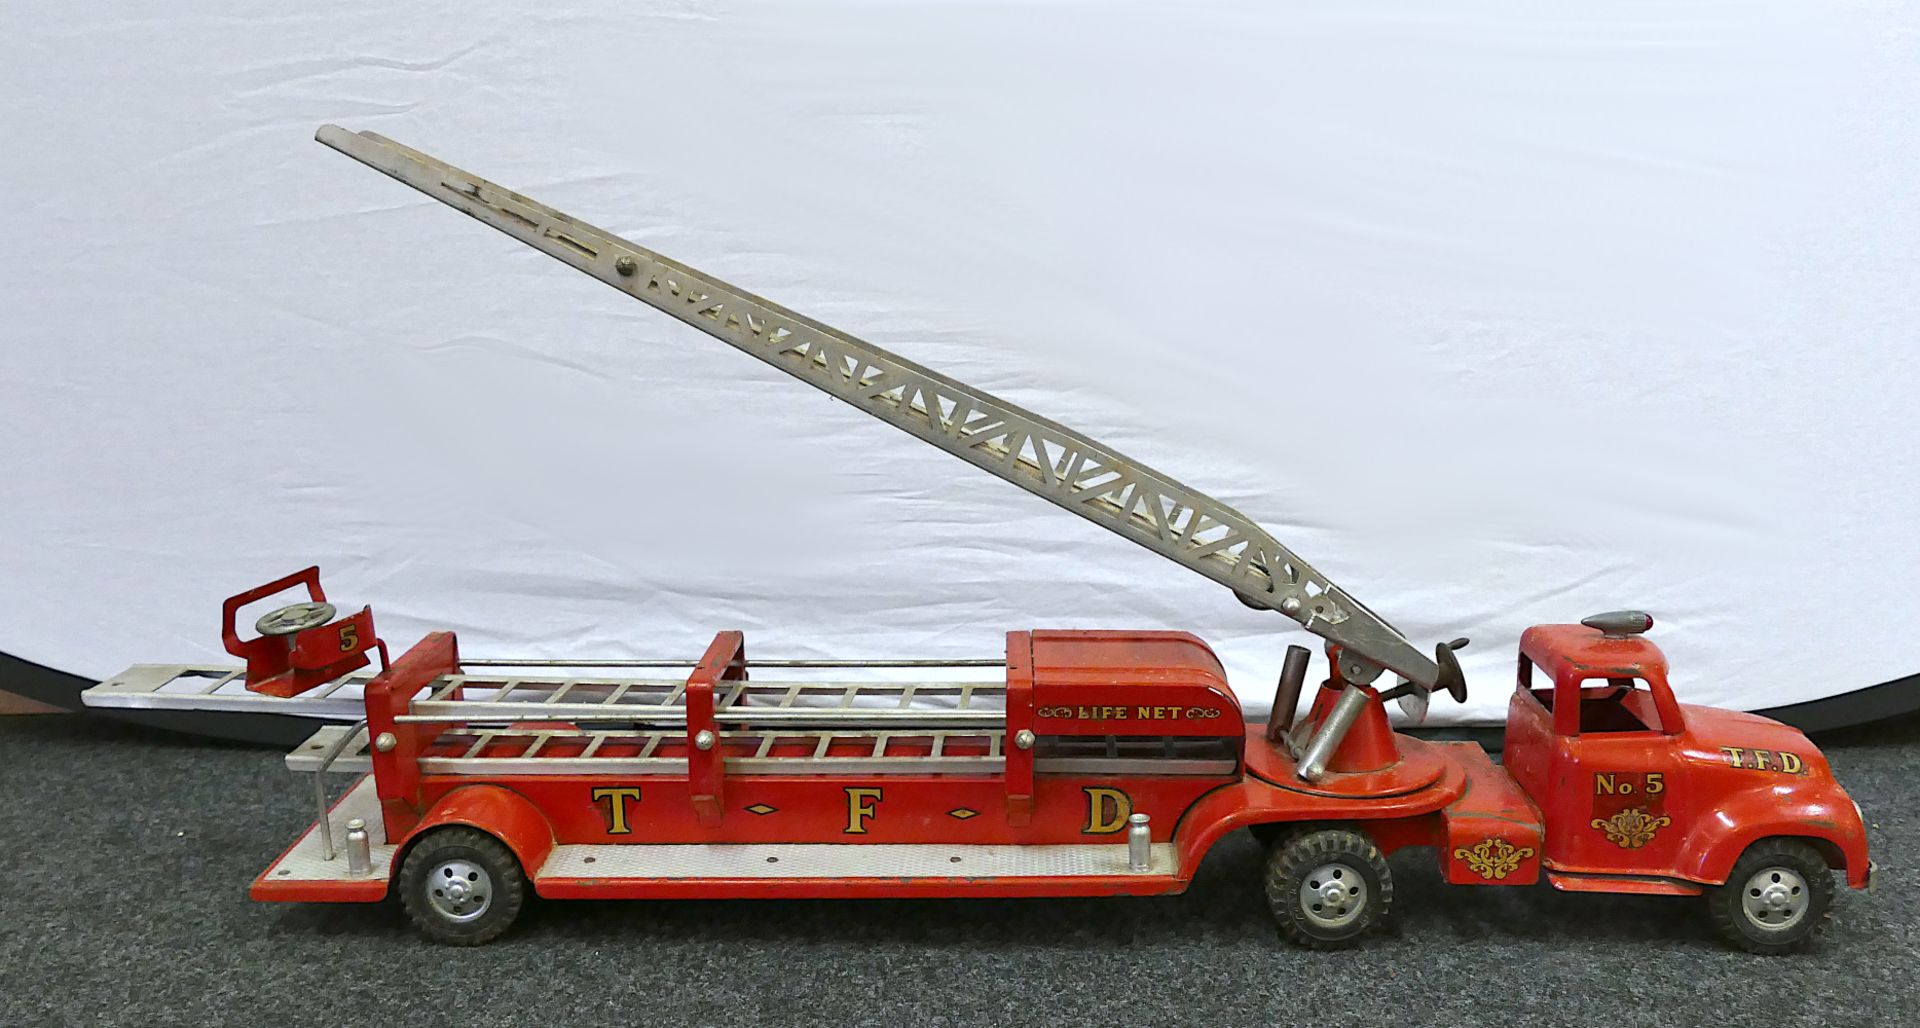 1 Feuerwehrleiterwagen TONKA, USA "T.F.D. No. 5" wohl 1950er Jahre, rot lackierter Stahl u.a., ca. L - Image 3 of 8